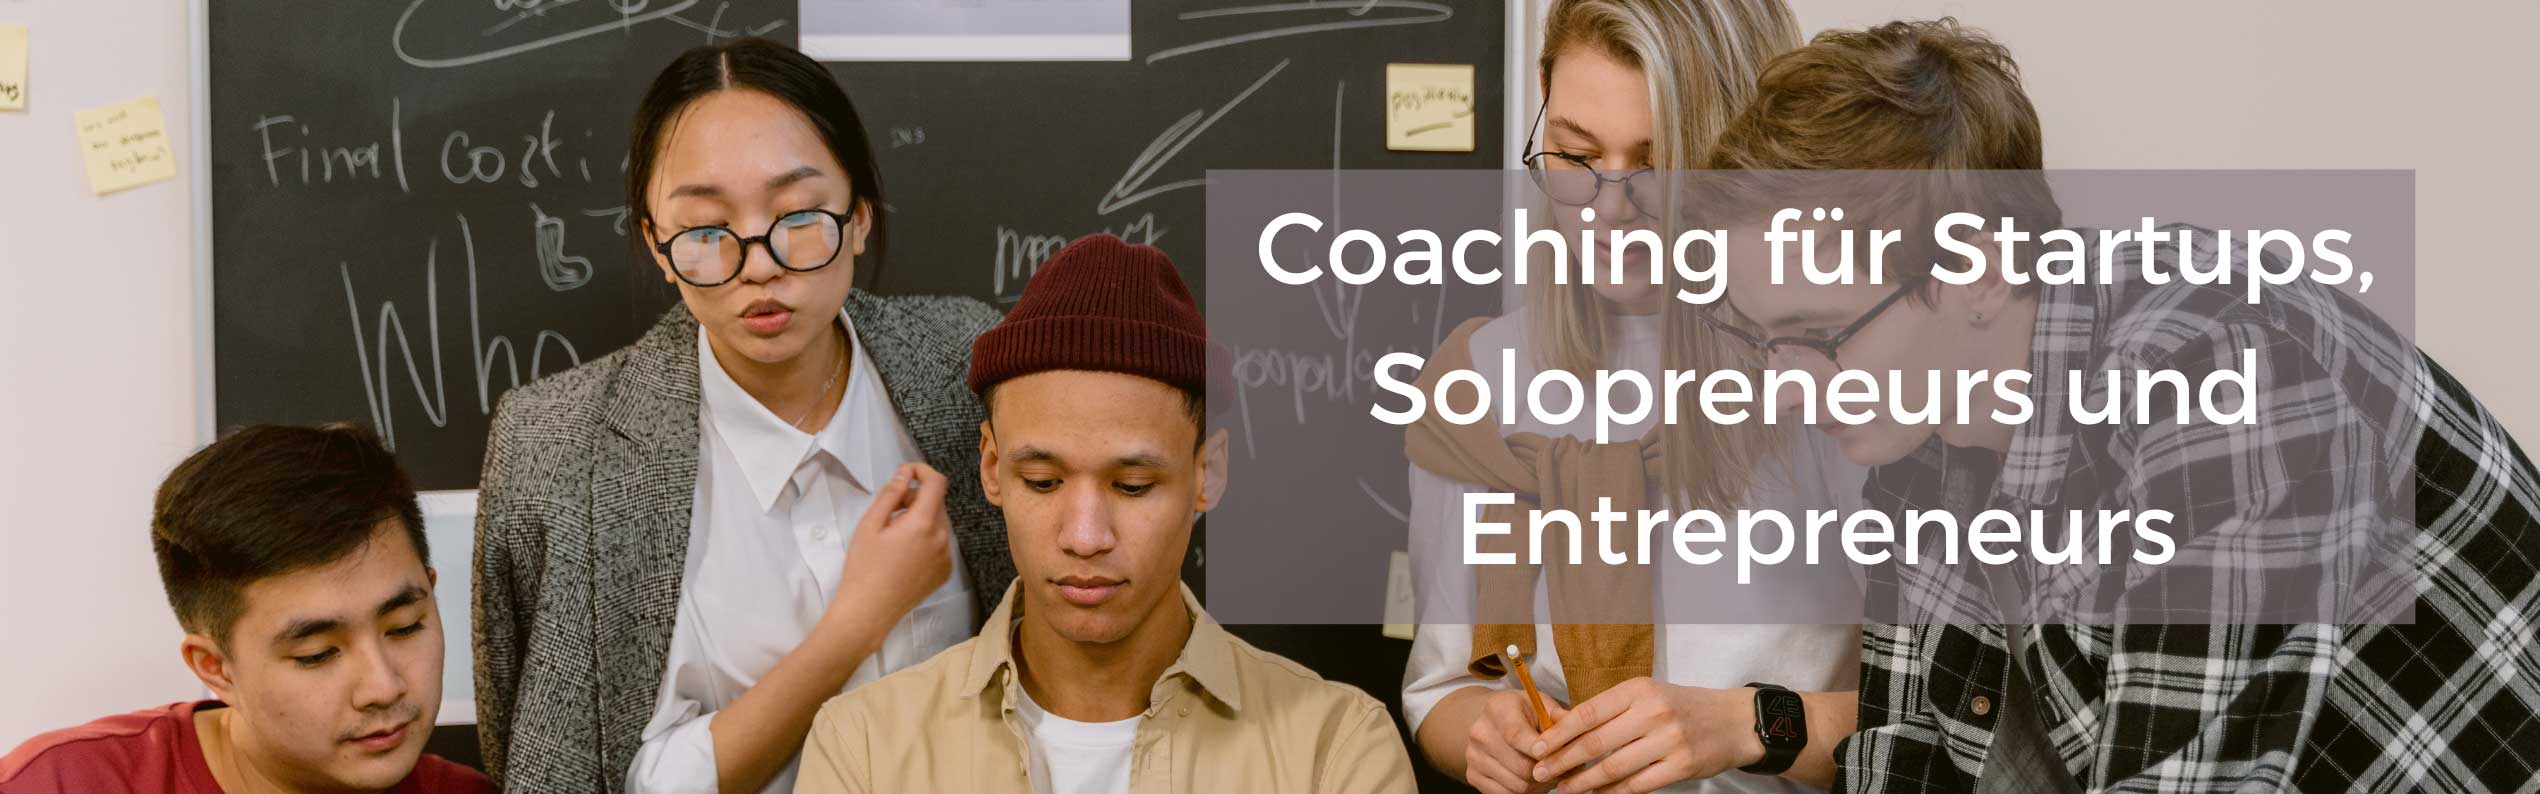 Coaching für Startups, Solopreneurs und Entrepreneurs